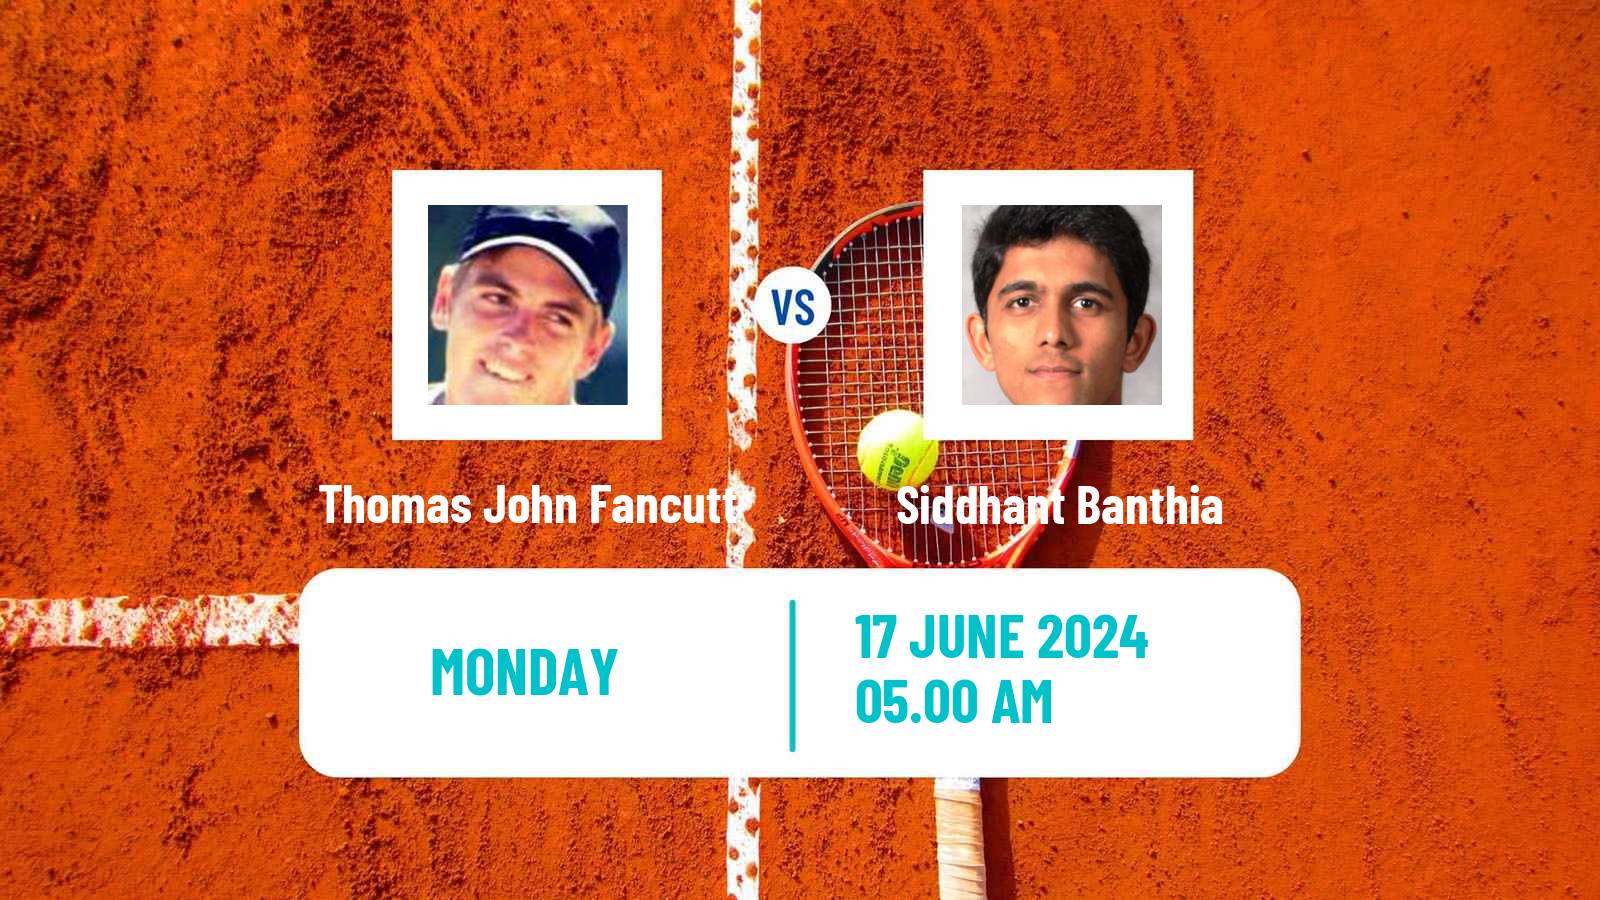 Tennis Blois Challenger Men Thomas John Fancutt - Siddhant Banthia